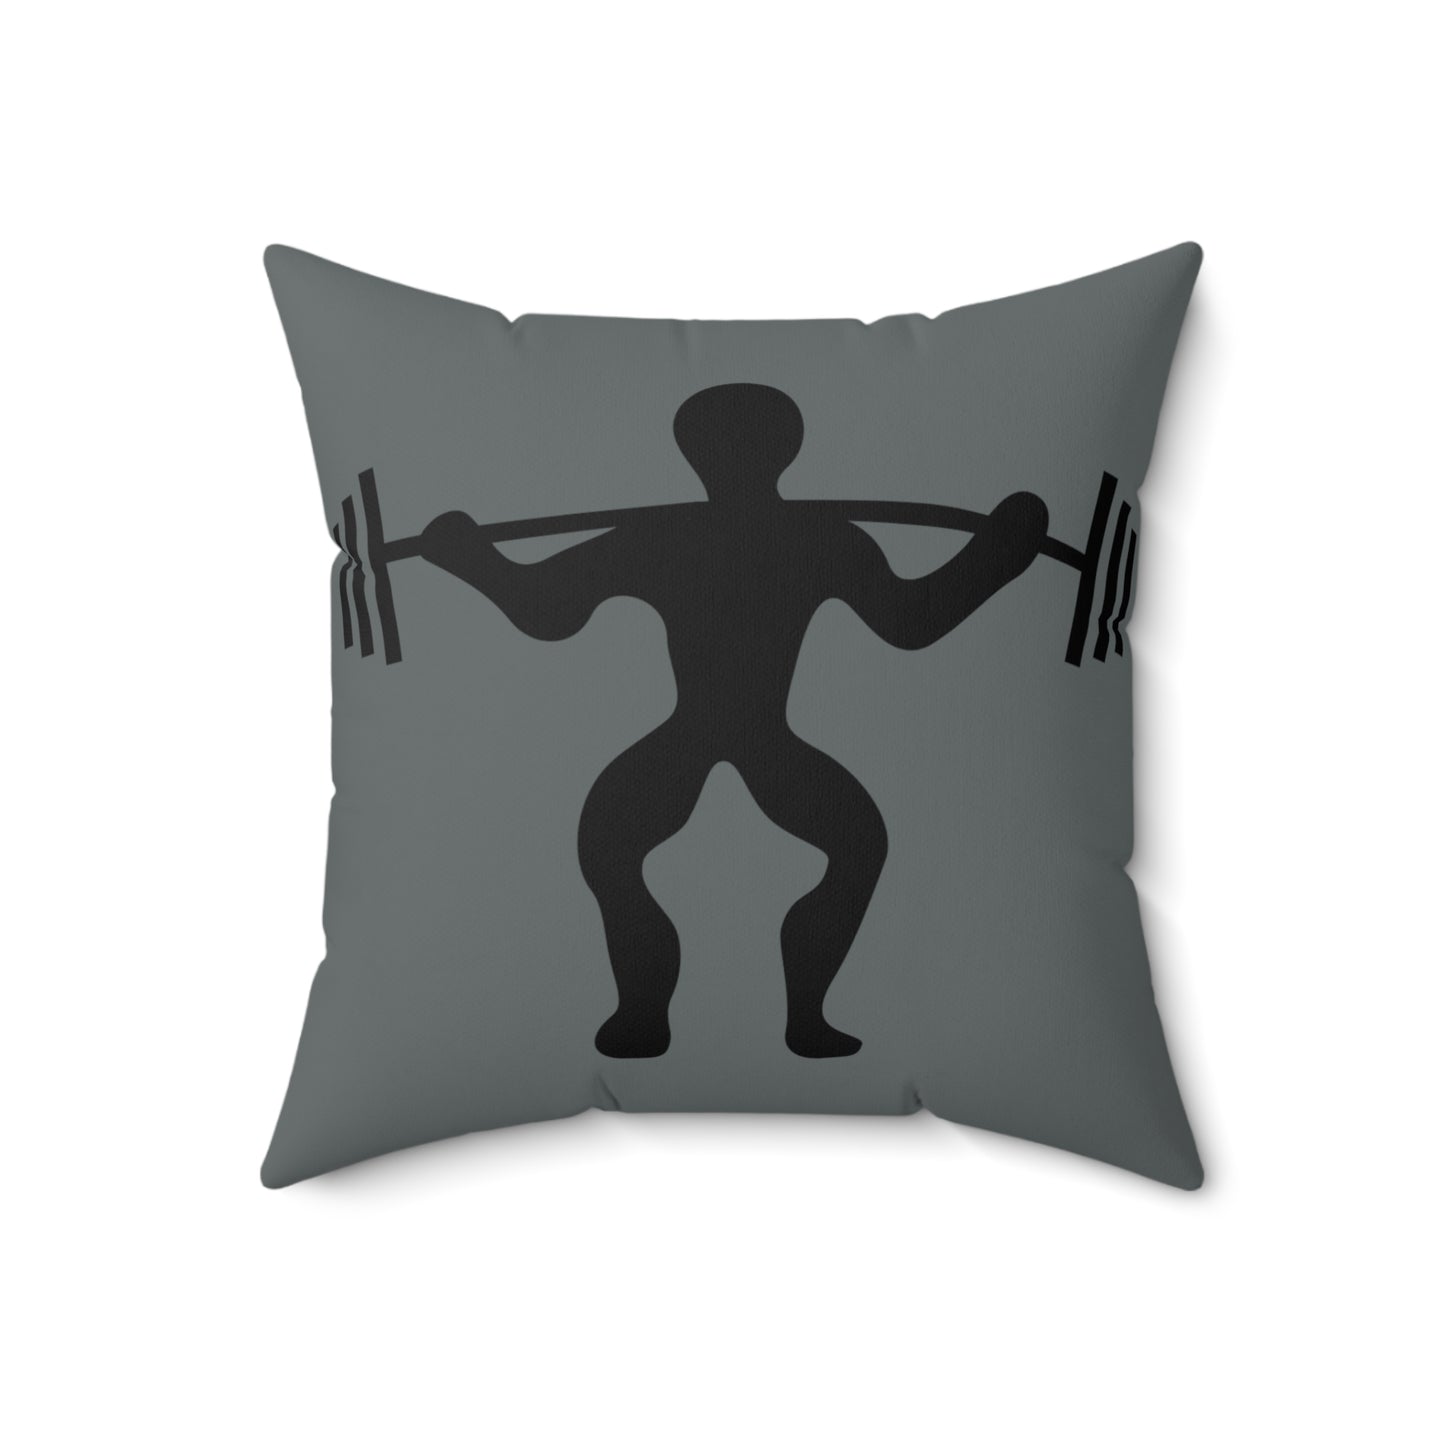 Spun Polyester Square Pillow: Weightlifting Dark Grey